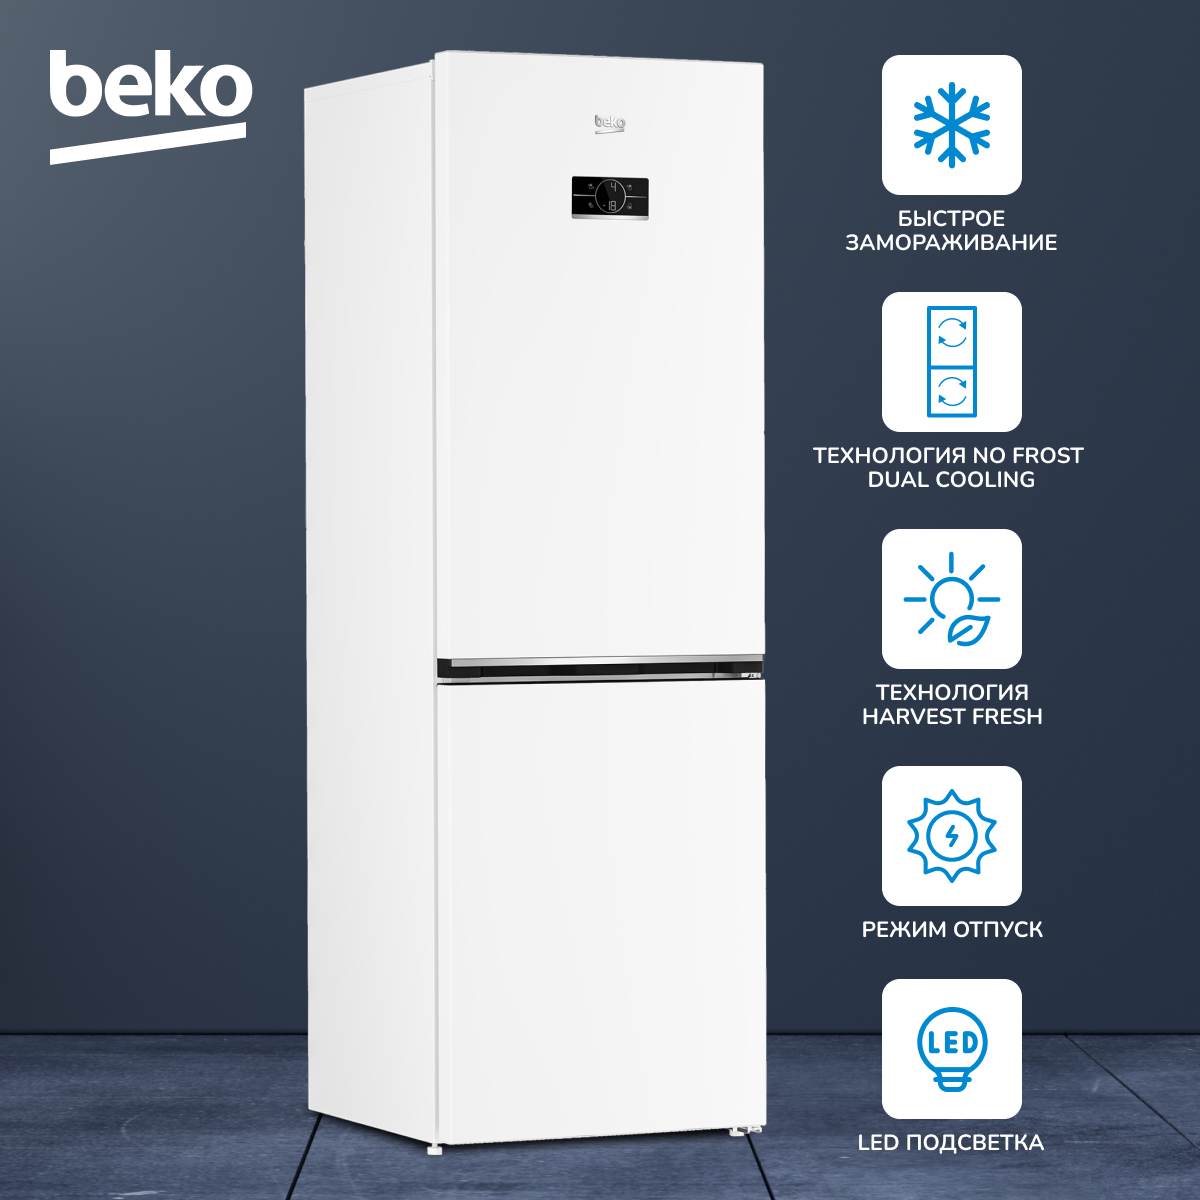 Холодильник Beko B3RCNK362HW, купить в Москве, цены в интернет-магазинах на Мегамаркет